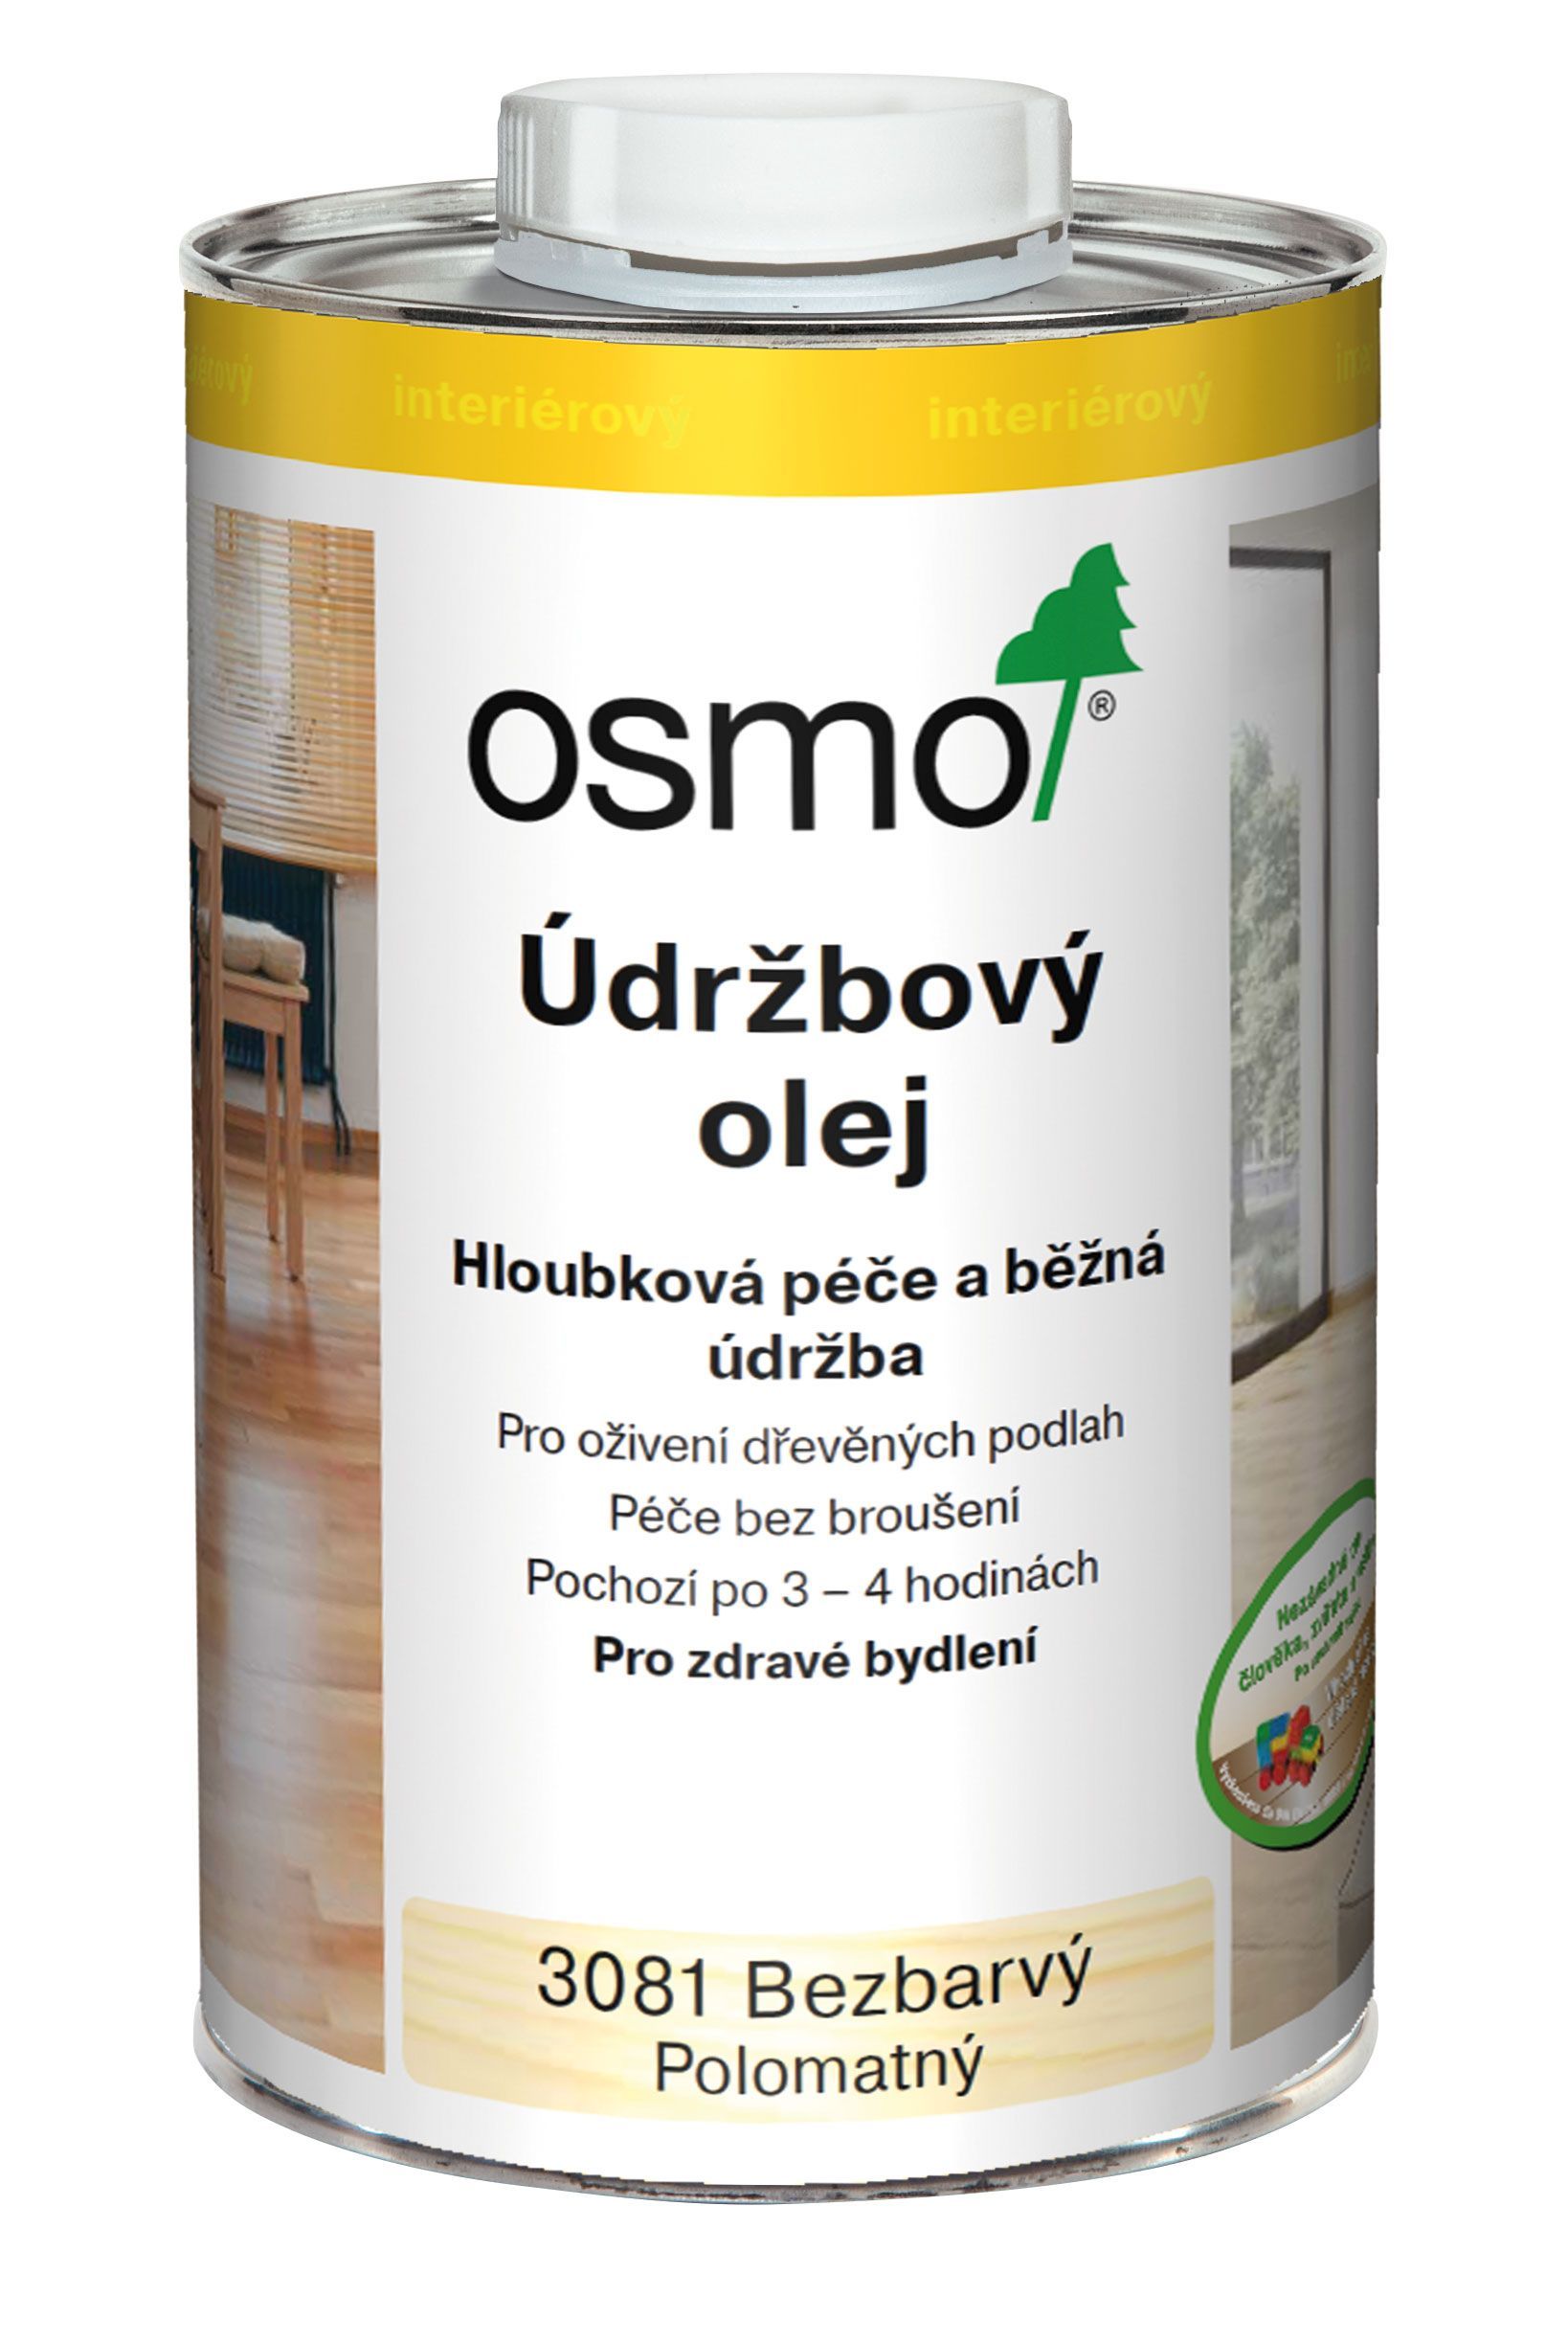 OSMO Údržbový olej Odstín: 3440 bílý transparentní, Velikost balení: 10,00 l